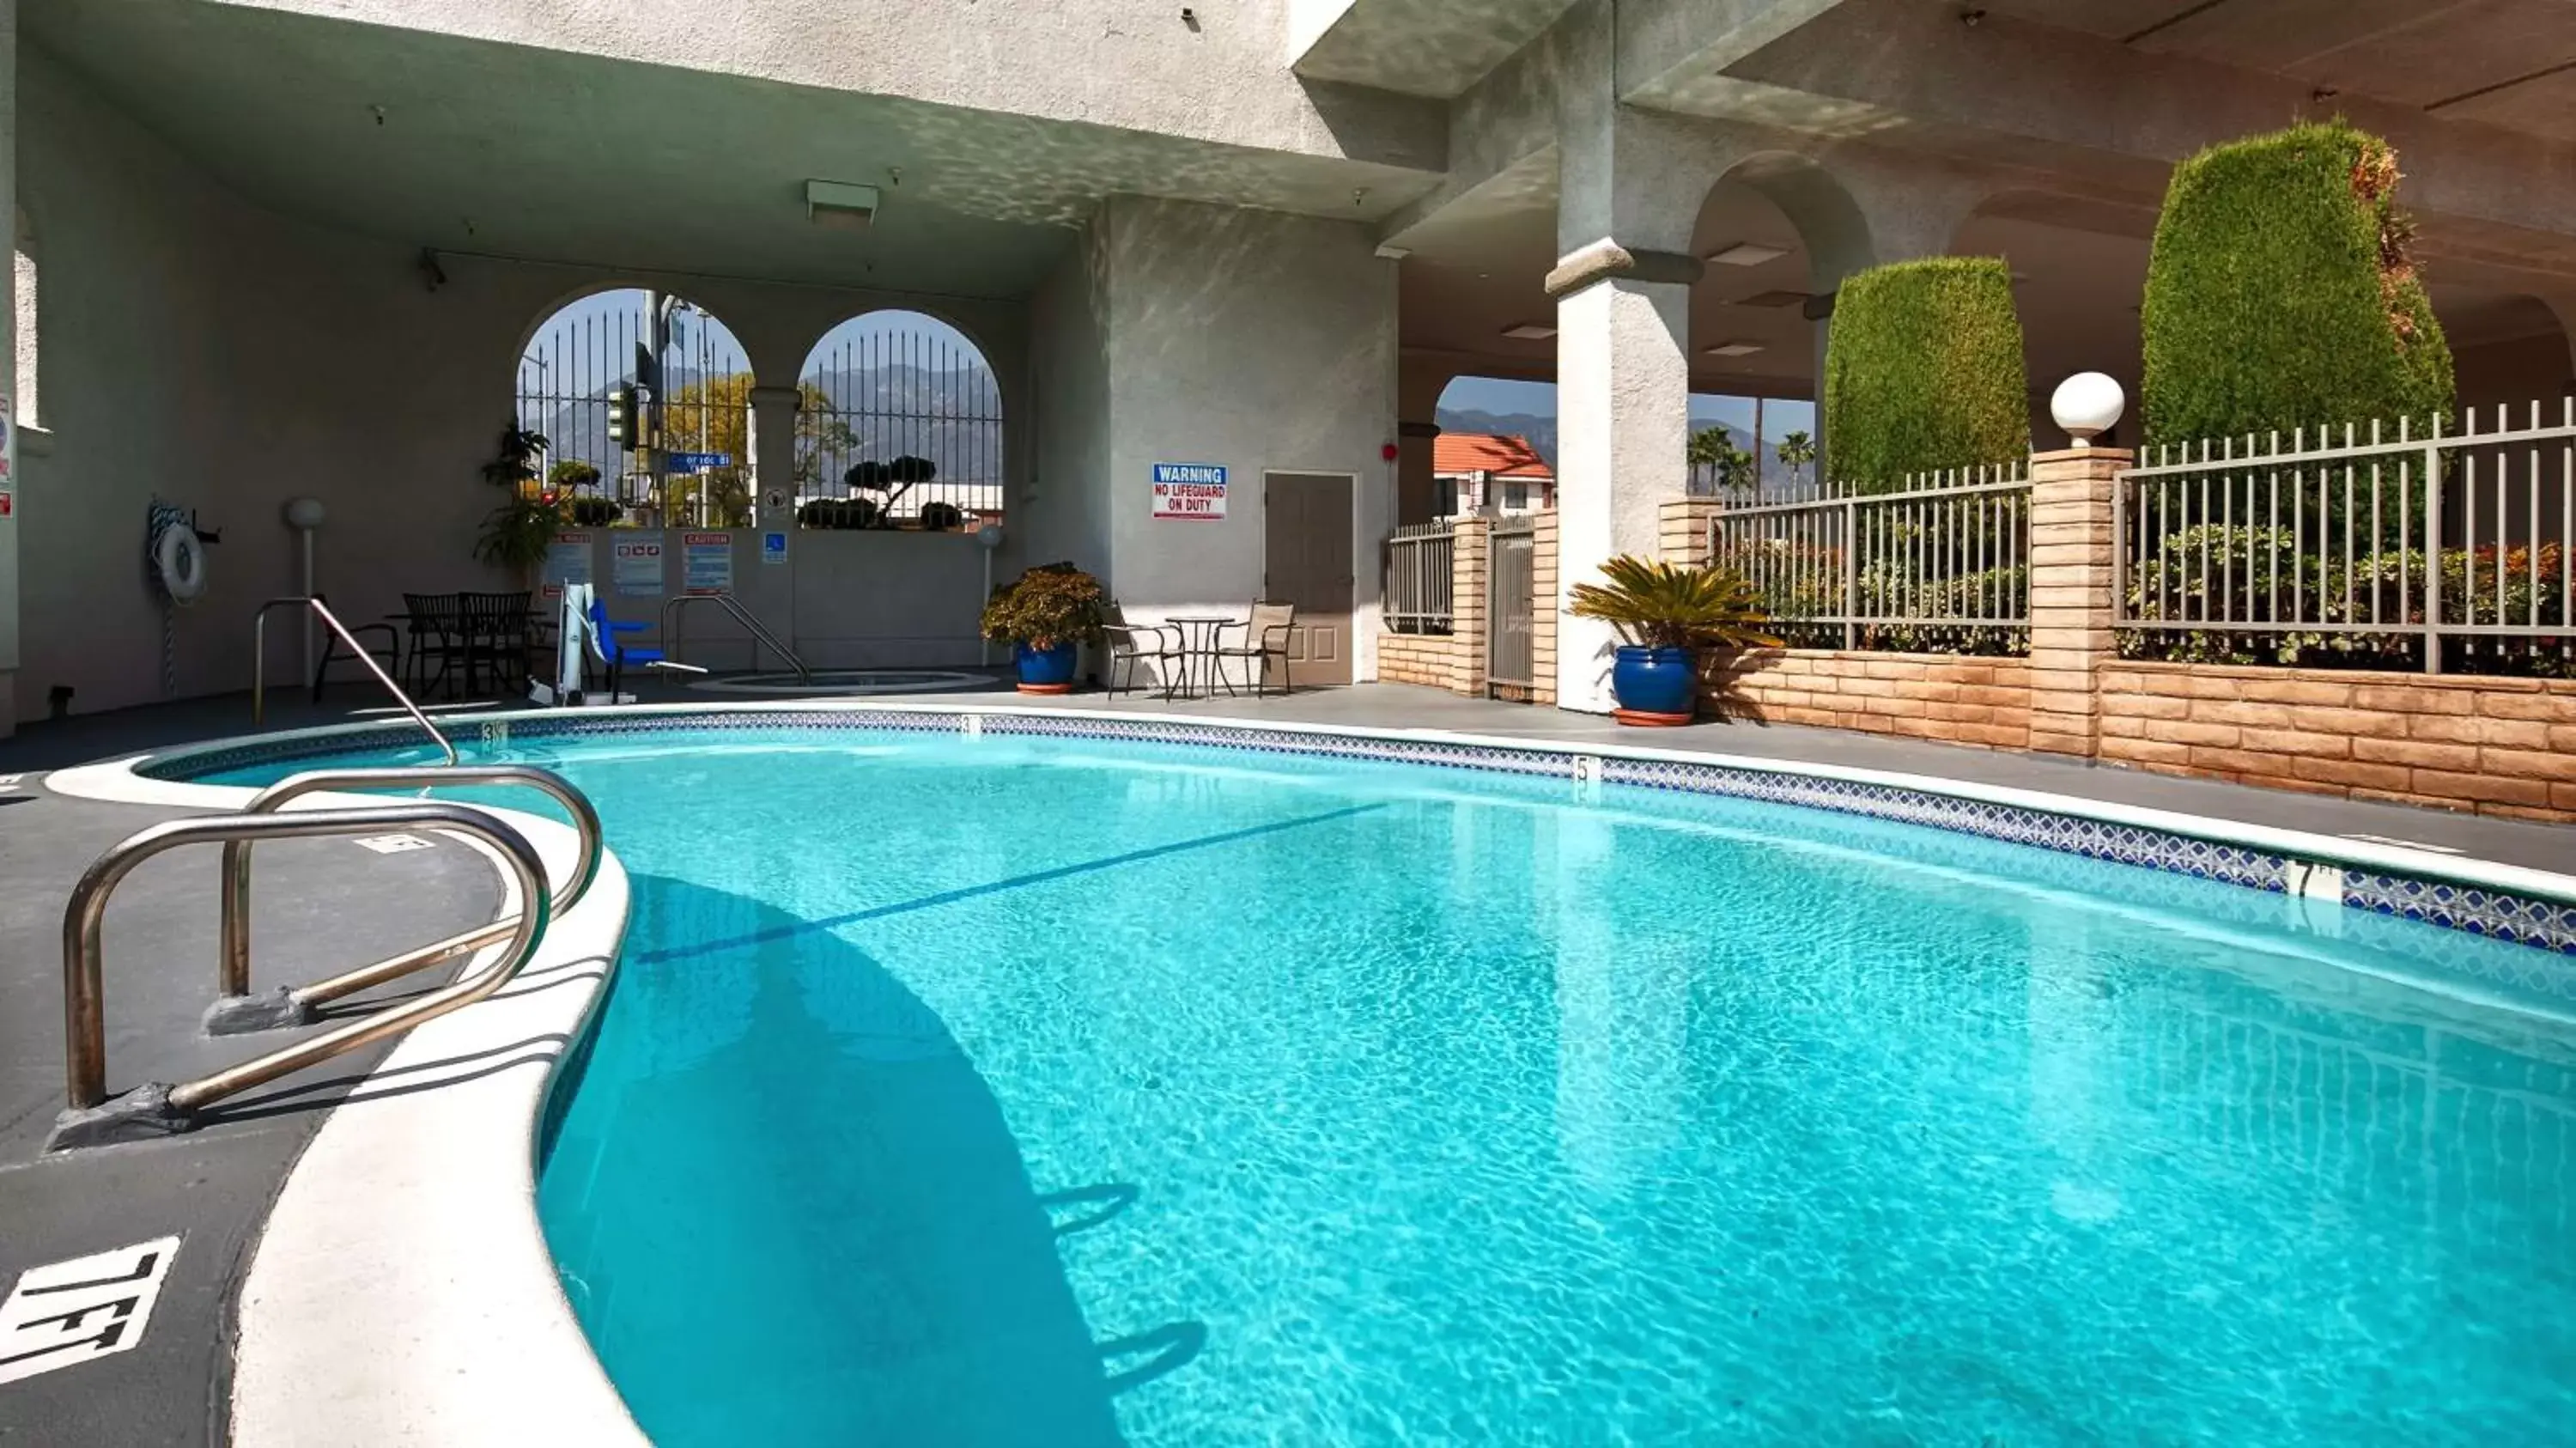 On site, Swimming Pool in Best Western Pasadena Royale Inn & Suites